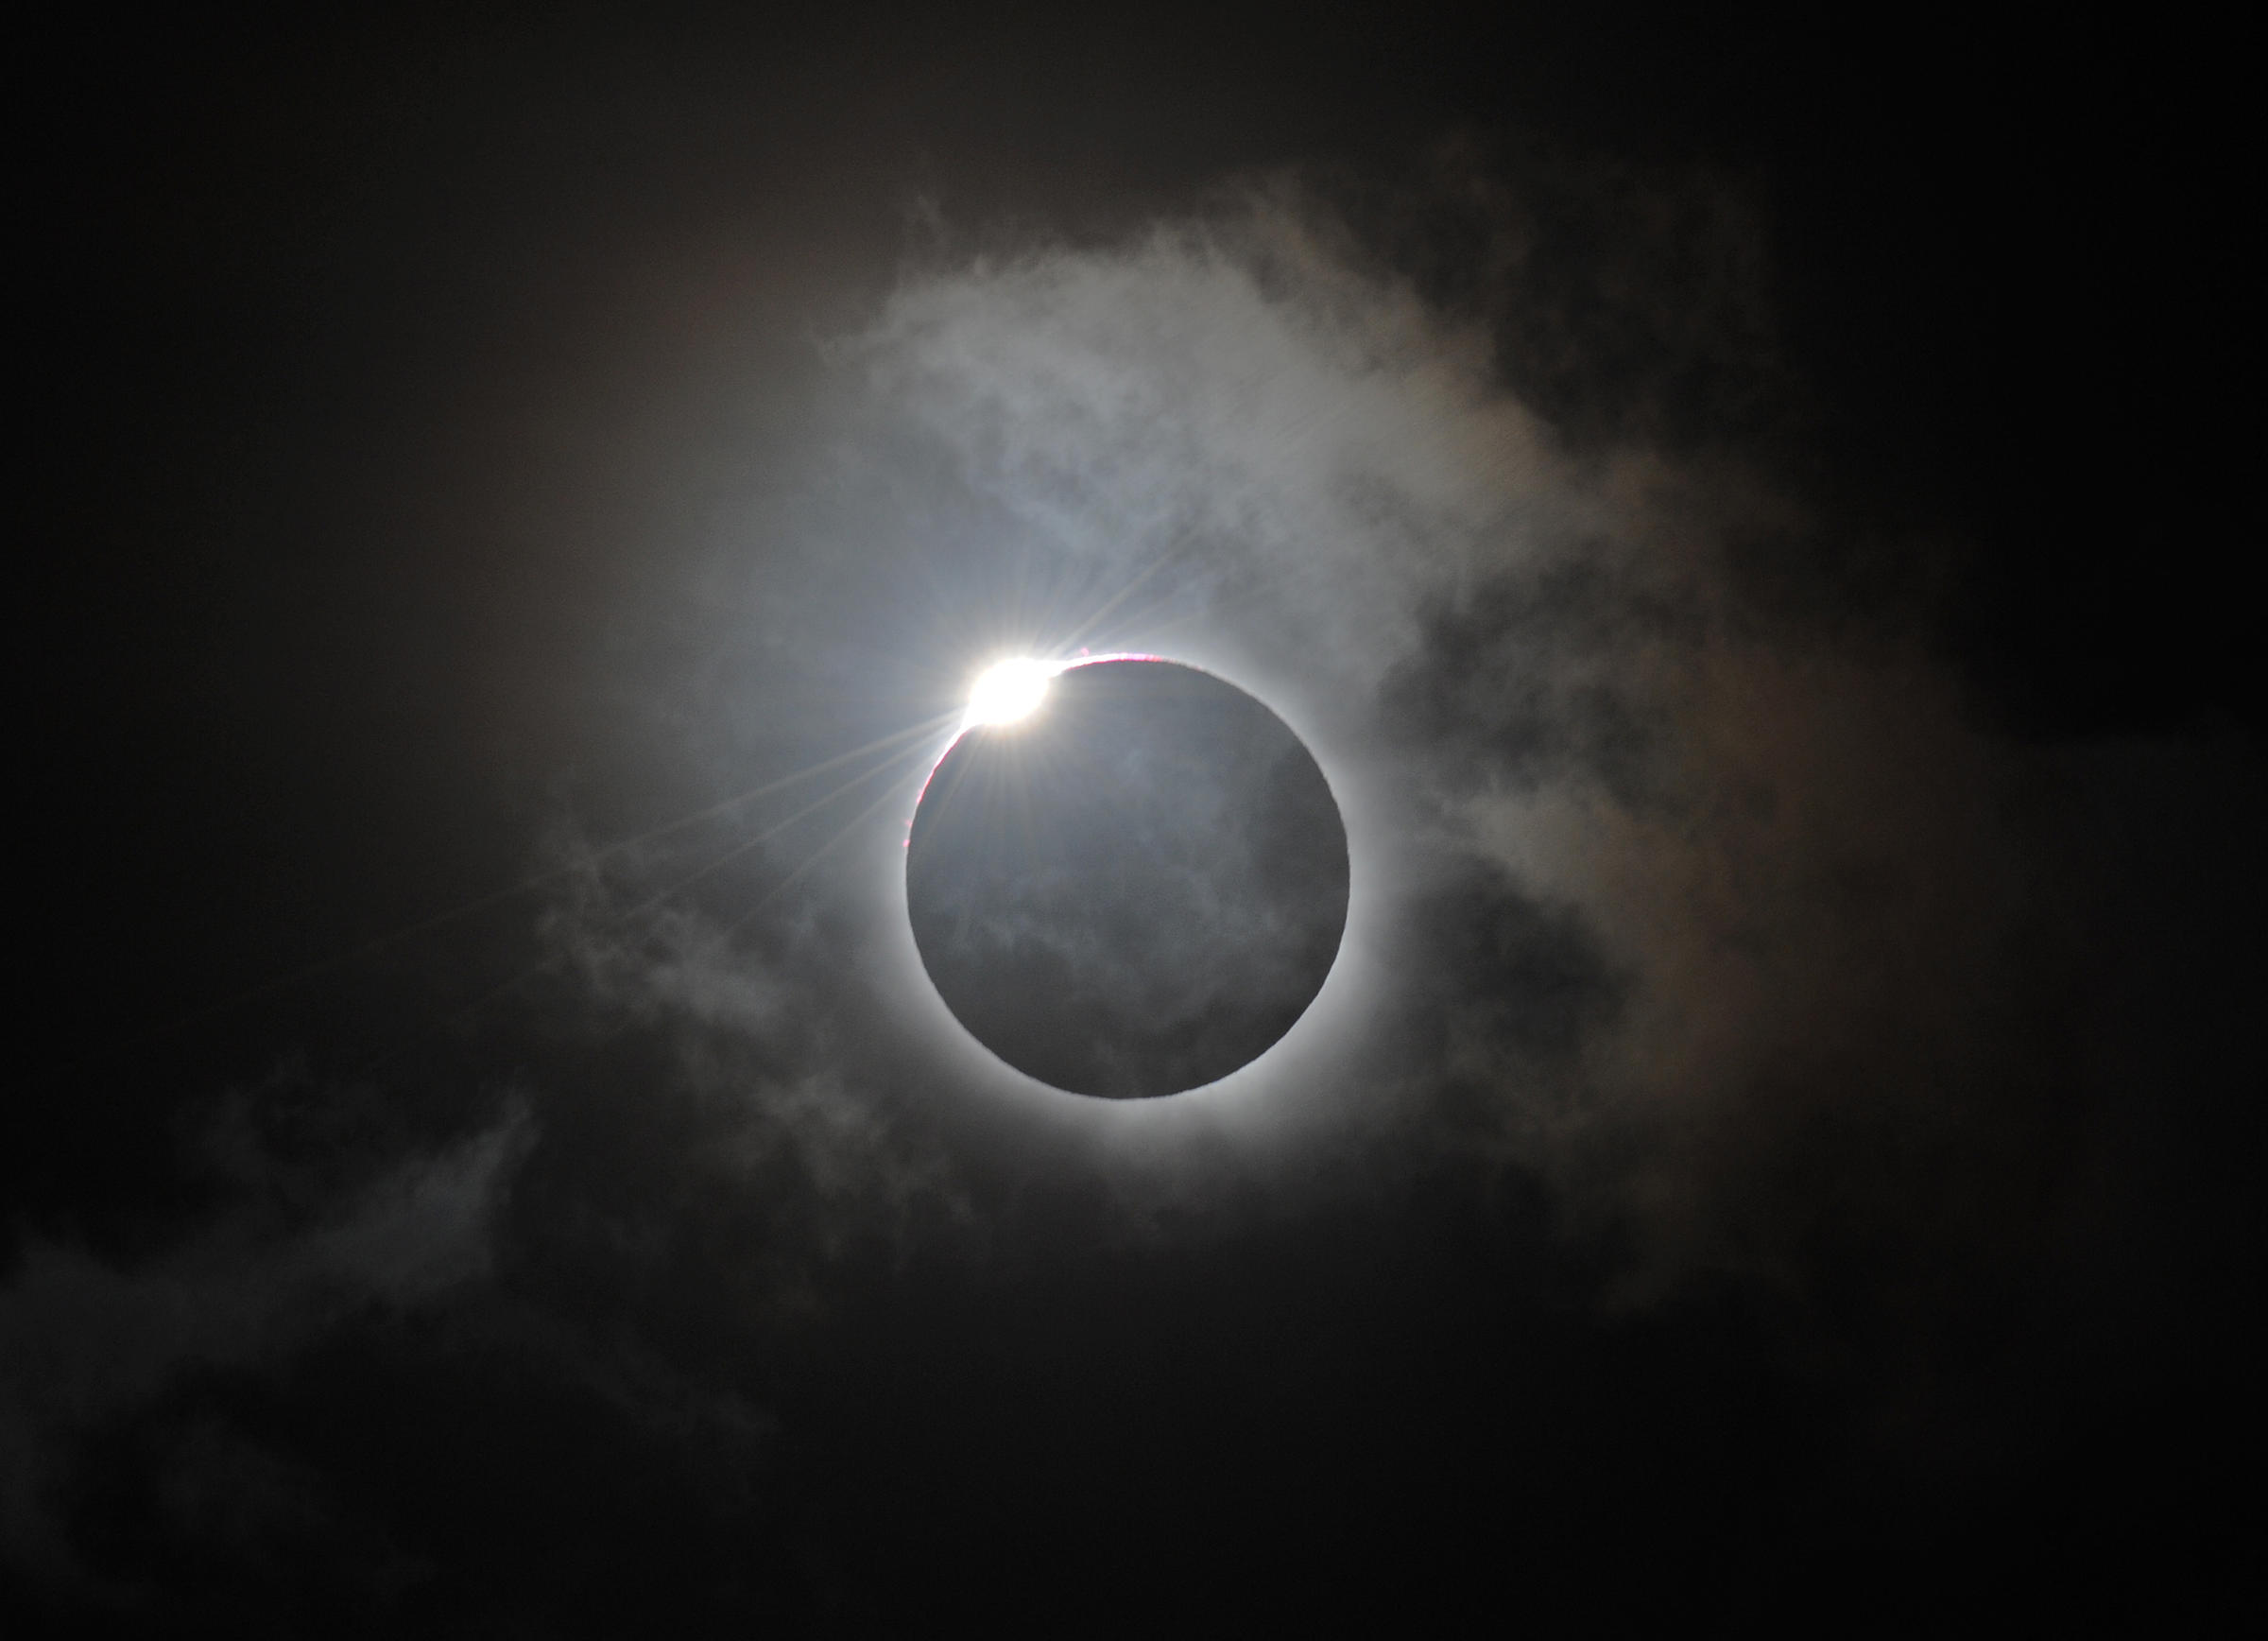 VIDEO In Australia, A Total Solar Eclipse KNKX